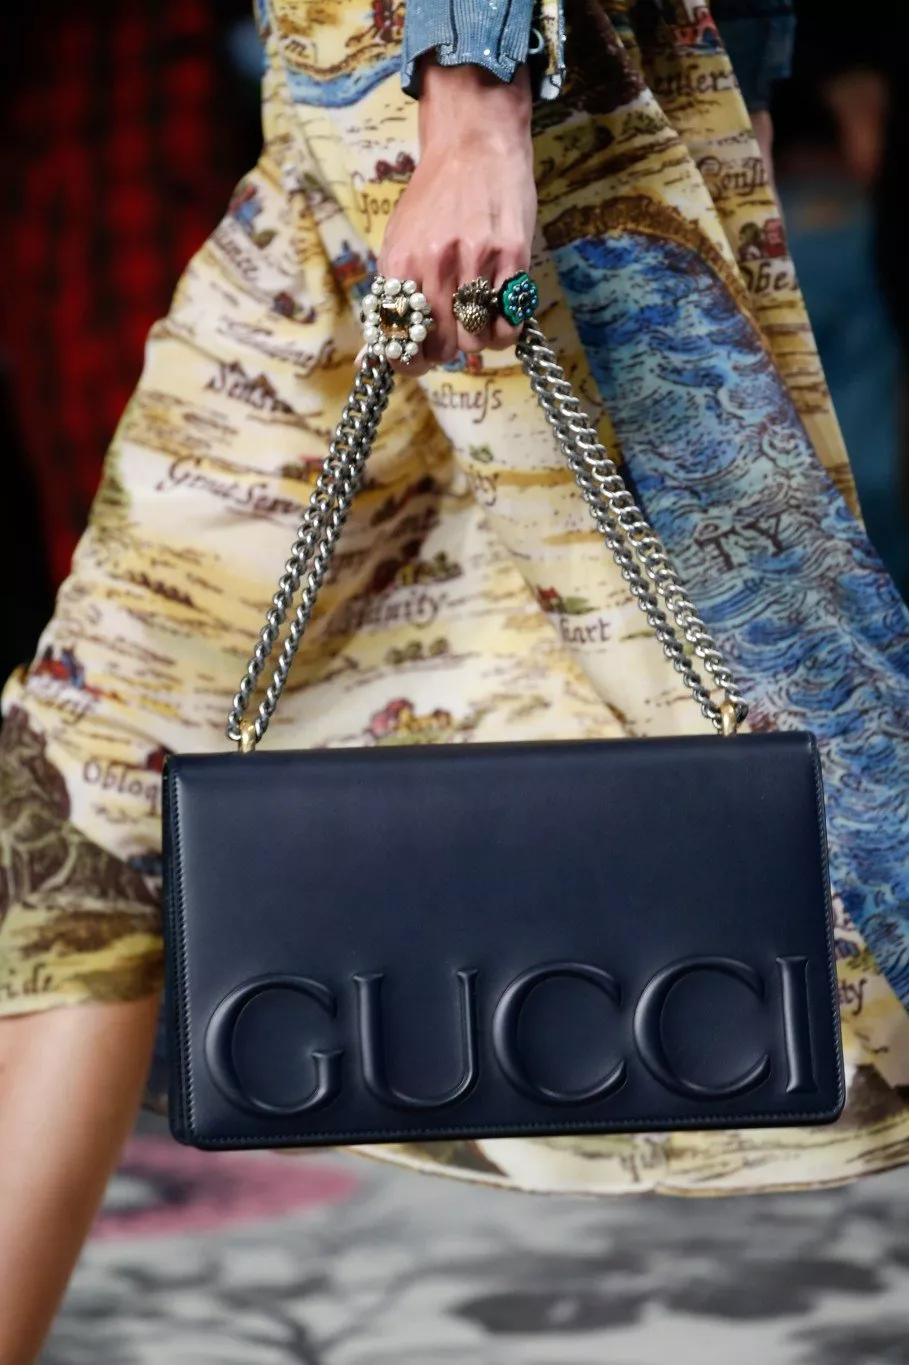 خواتم Gucci لربيع 2016: قطع فنيّة بامتياز